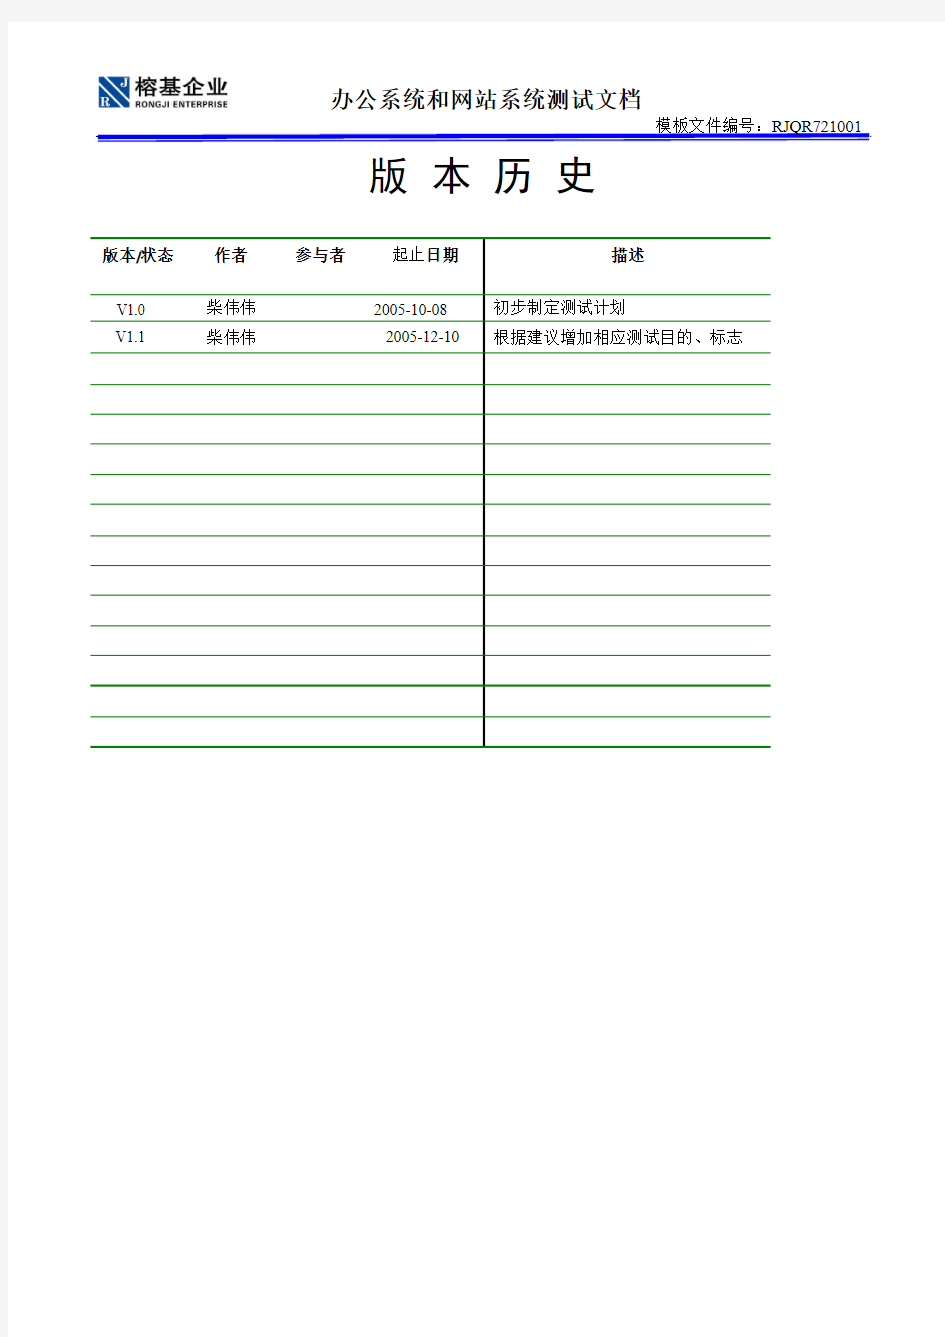 温州市瓯海区电子政务工程(软件)__测试文档V1.0